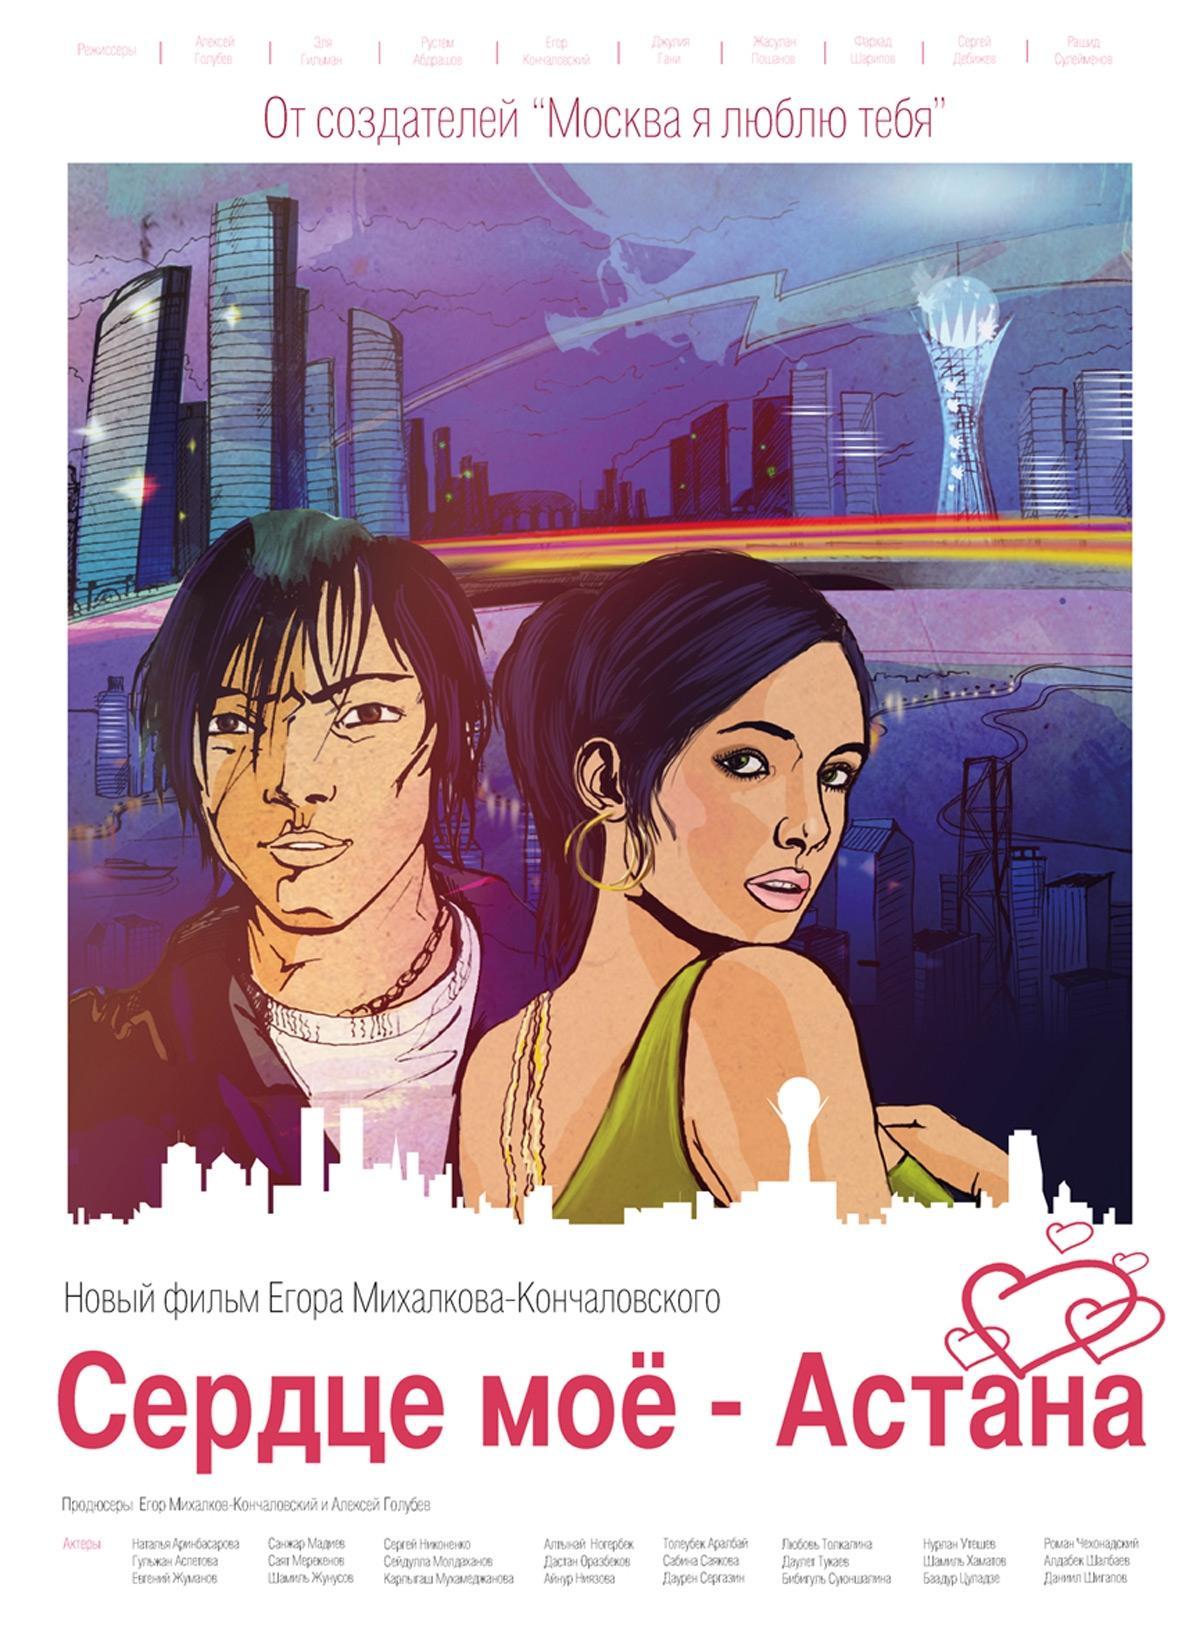 Постер фильма Сердце мое - Астана (киноальманах)